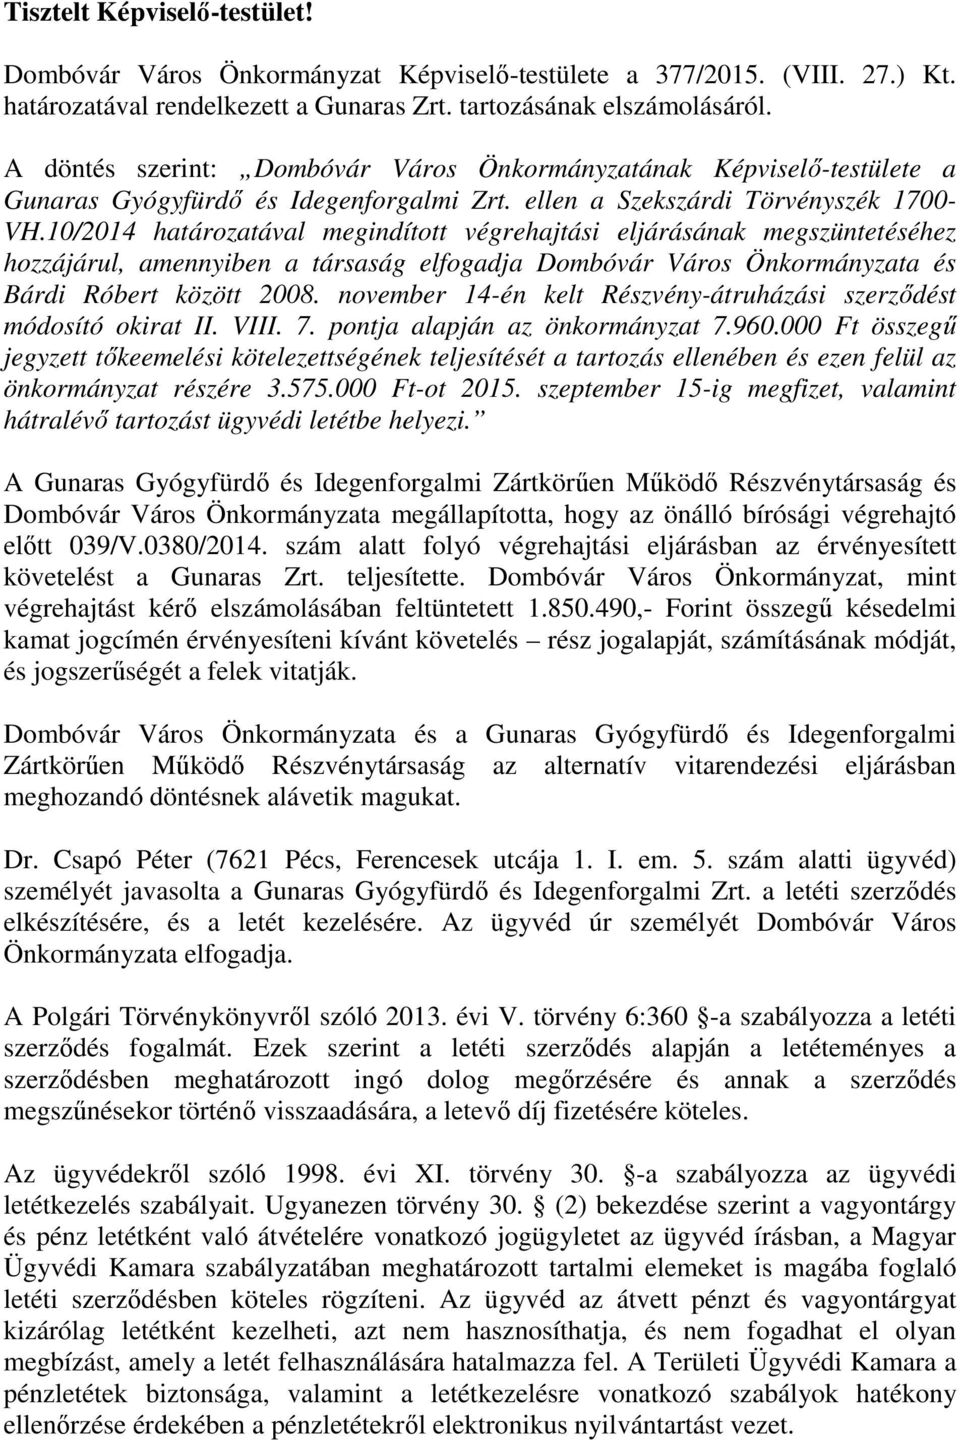 10/2014 határozatával megindított végrehajtási eljárásának megszüntetéséhez hozzájárul, amennyiben a társaság elfogadja Dombóvár Város Önkormányzata és Bárdi Róbert között 2008.